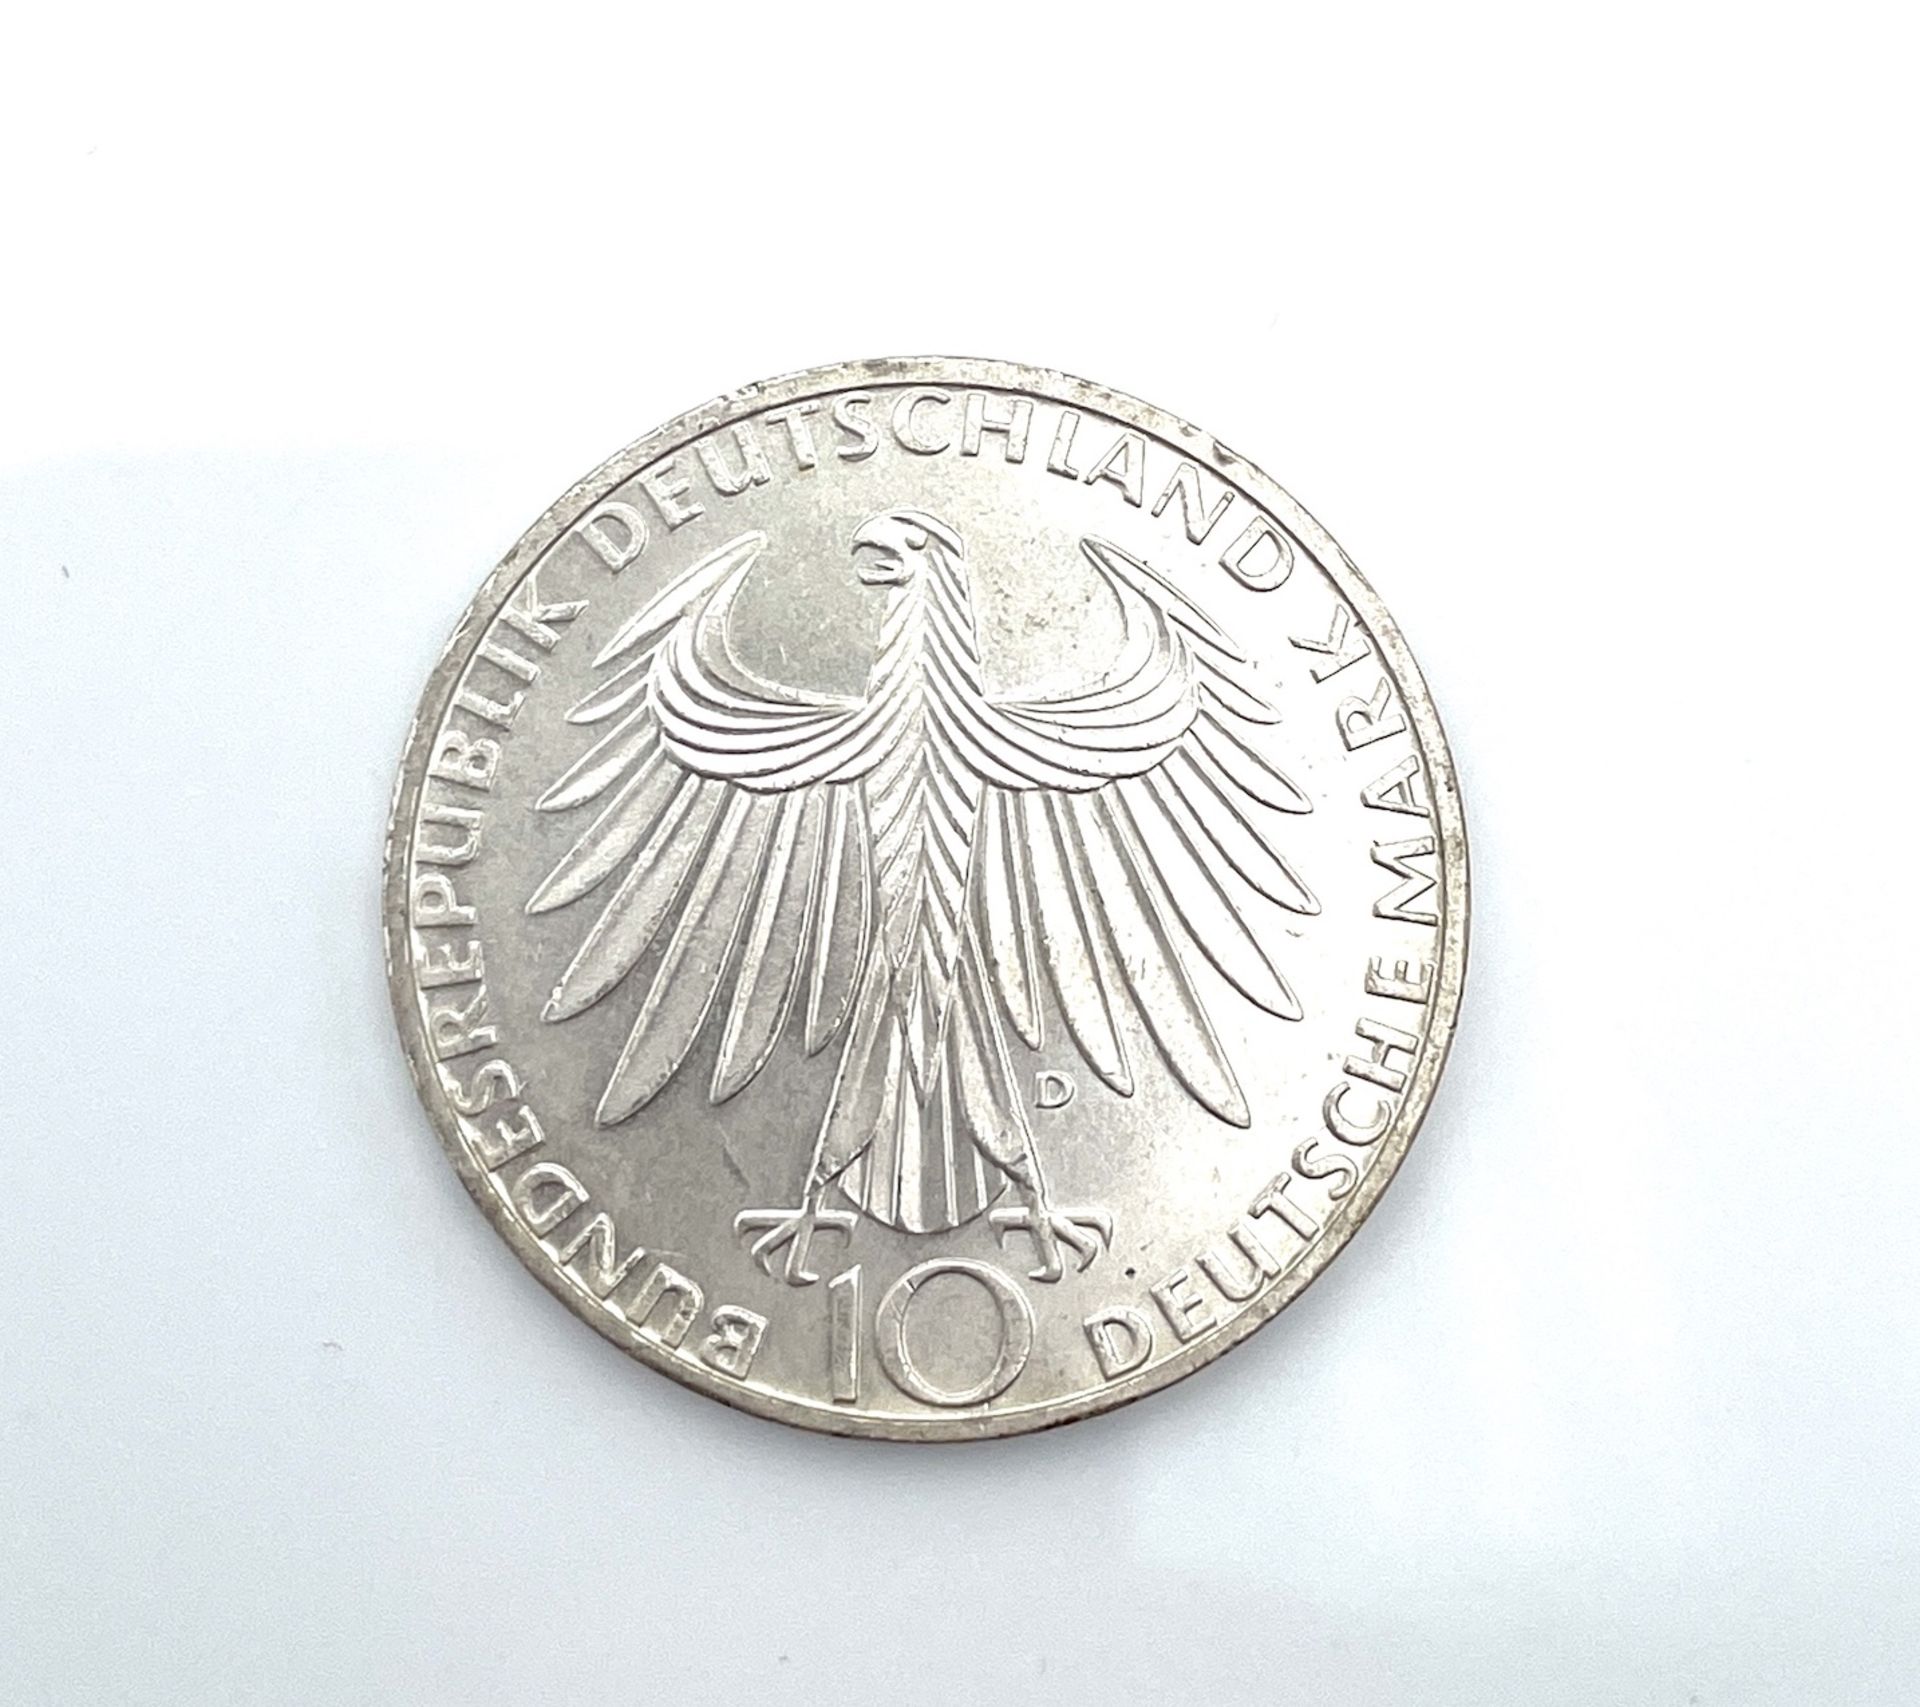 Münze, Silber, 10 DM, Olymiade 1972 in München, 15,5g - Bild 2 aus 2